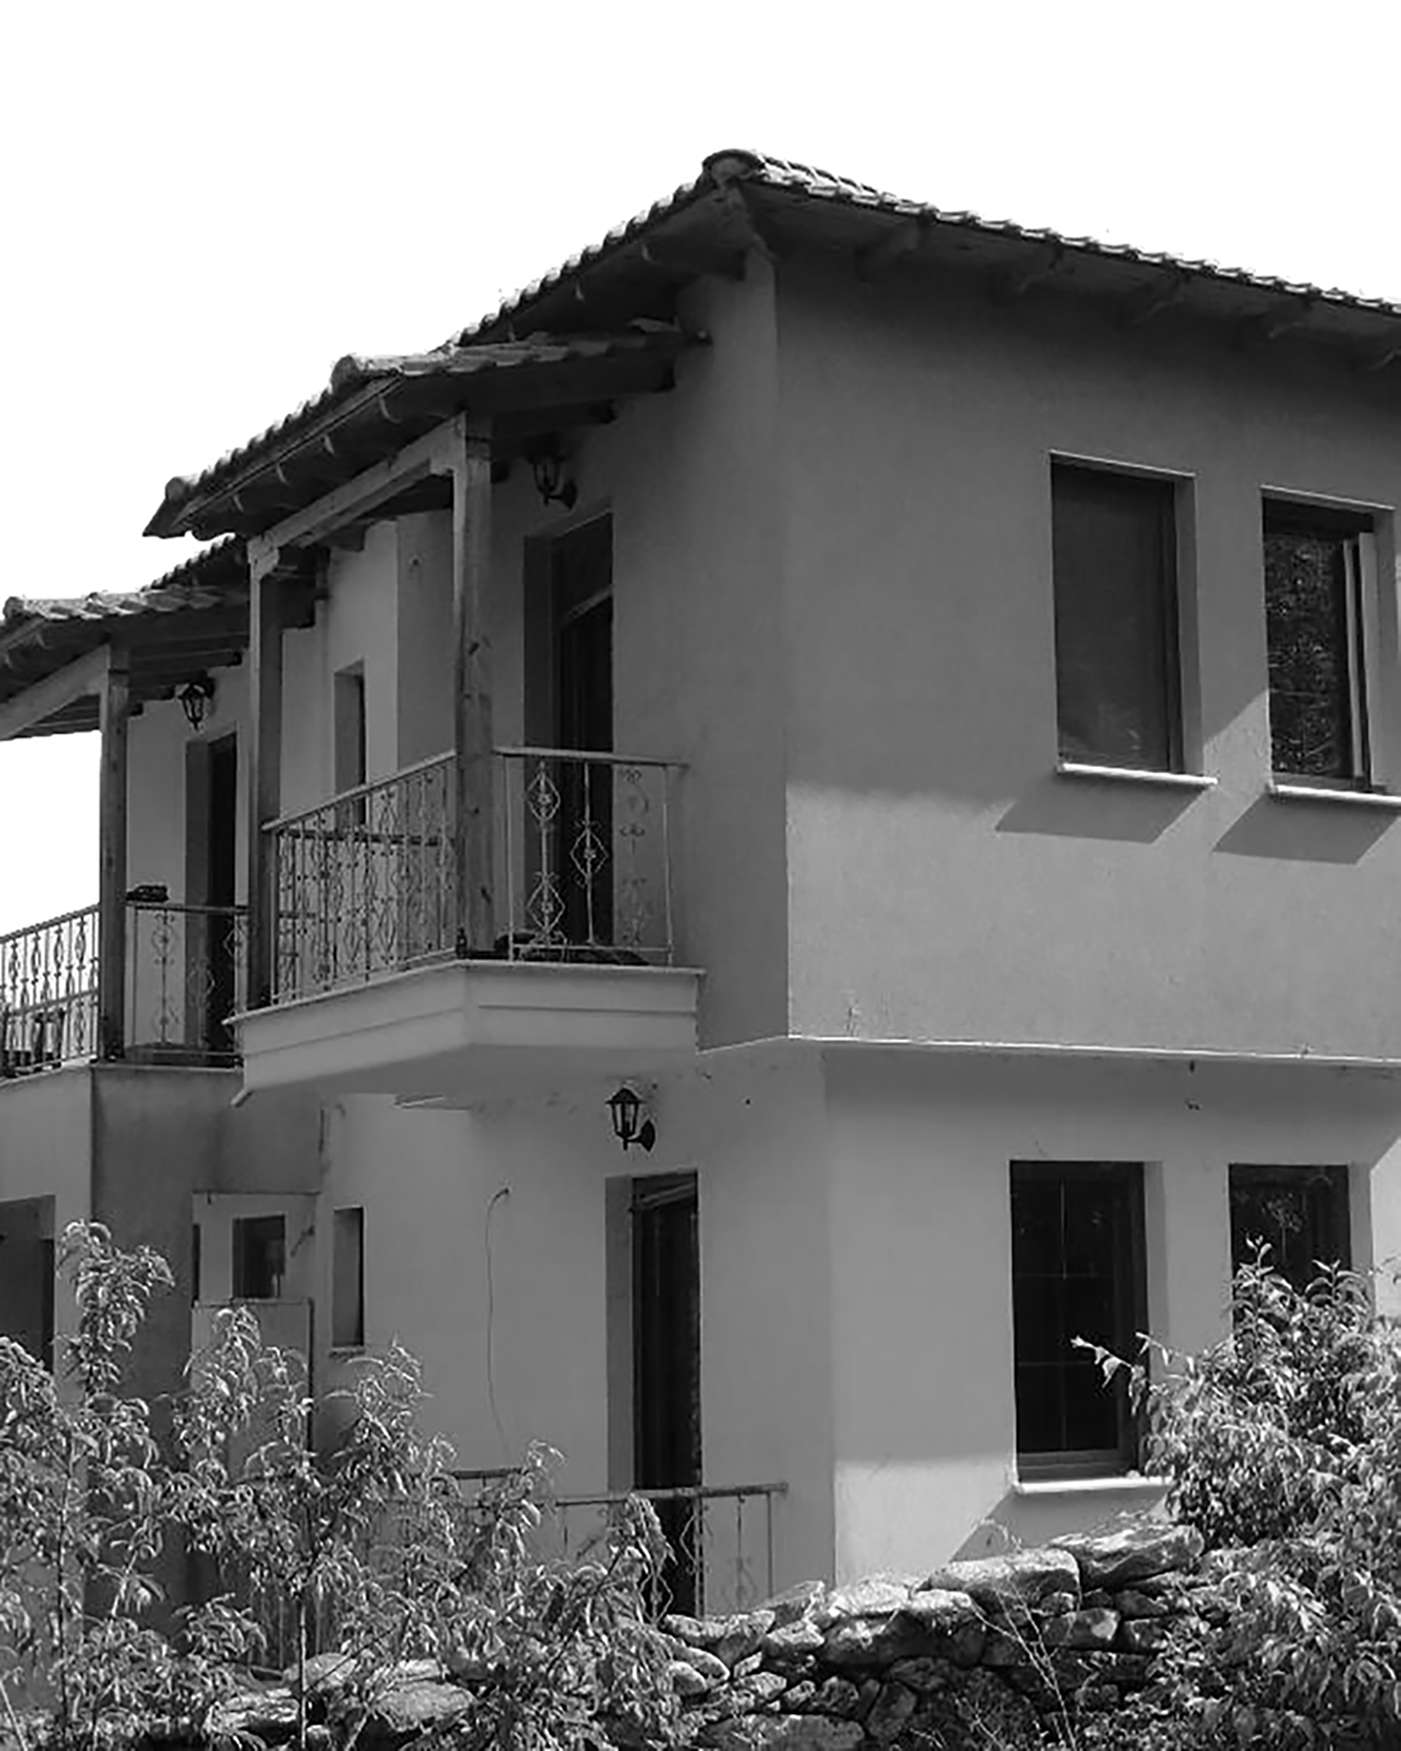 Μονοκατοικία στη Μεσορόπη Καβάλας (2009)